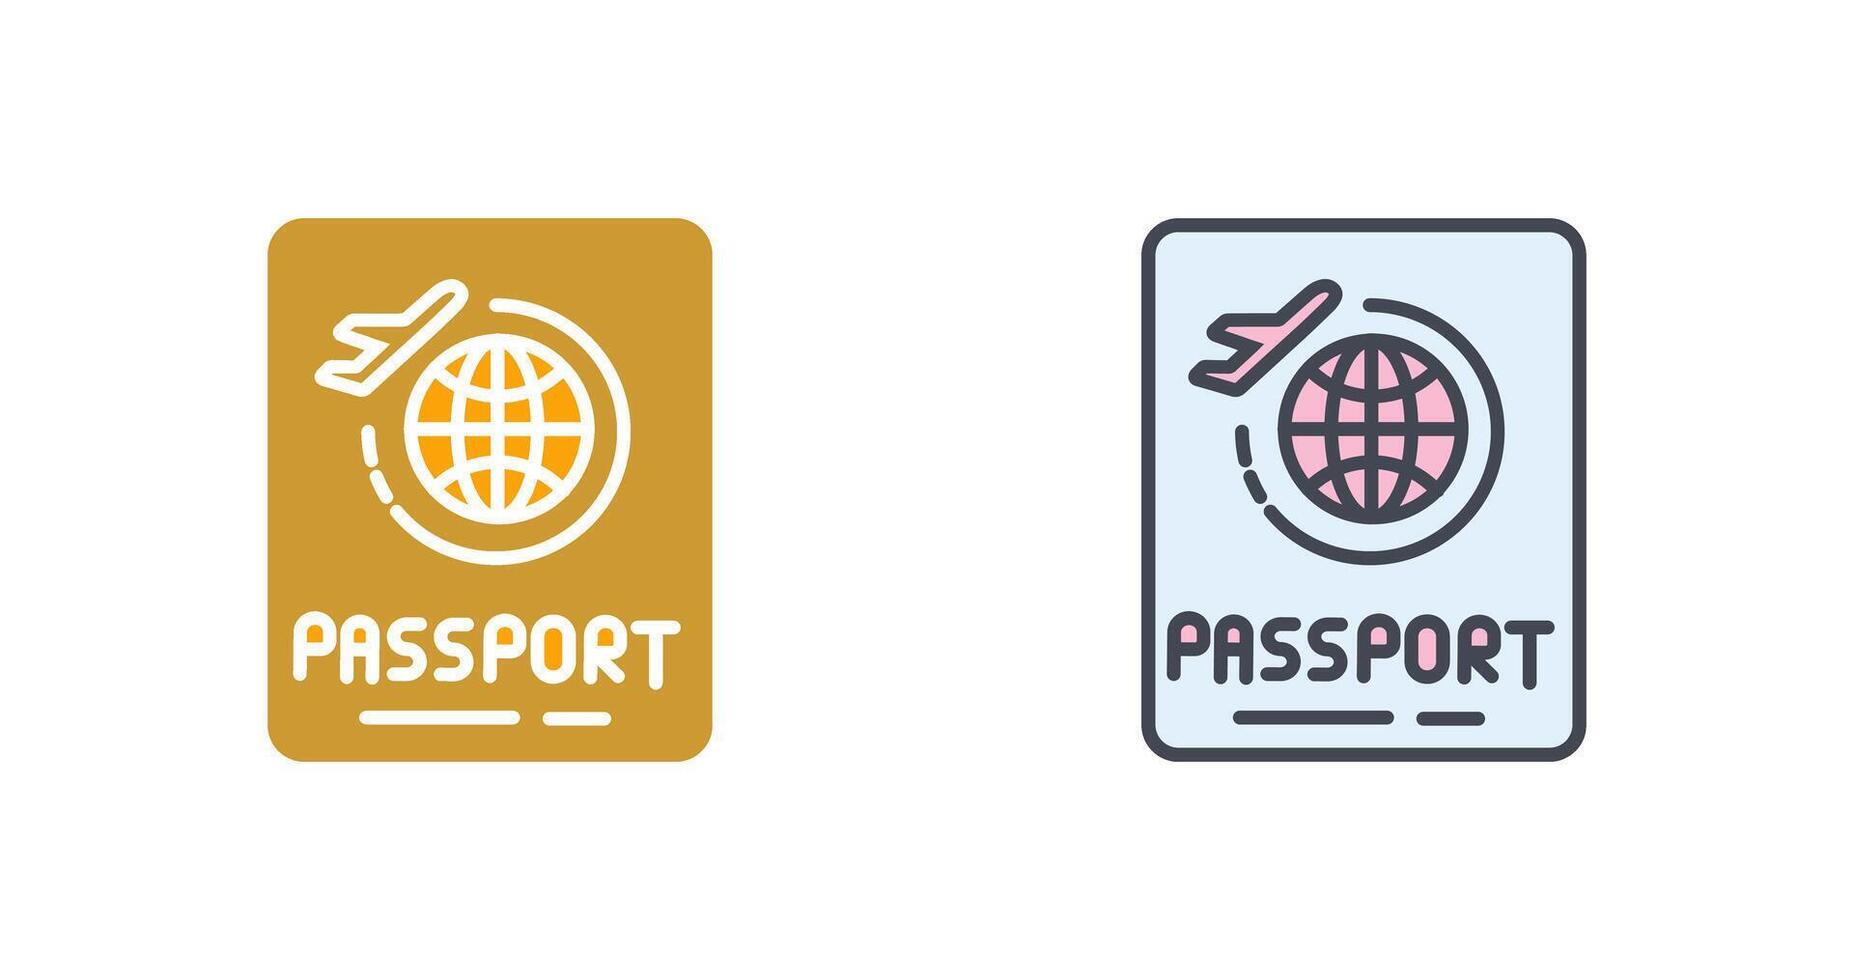 diseño de icono de pasaporte vector